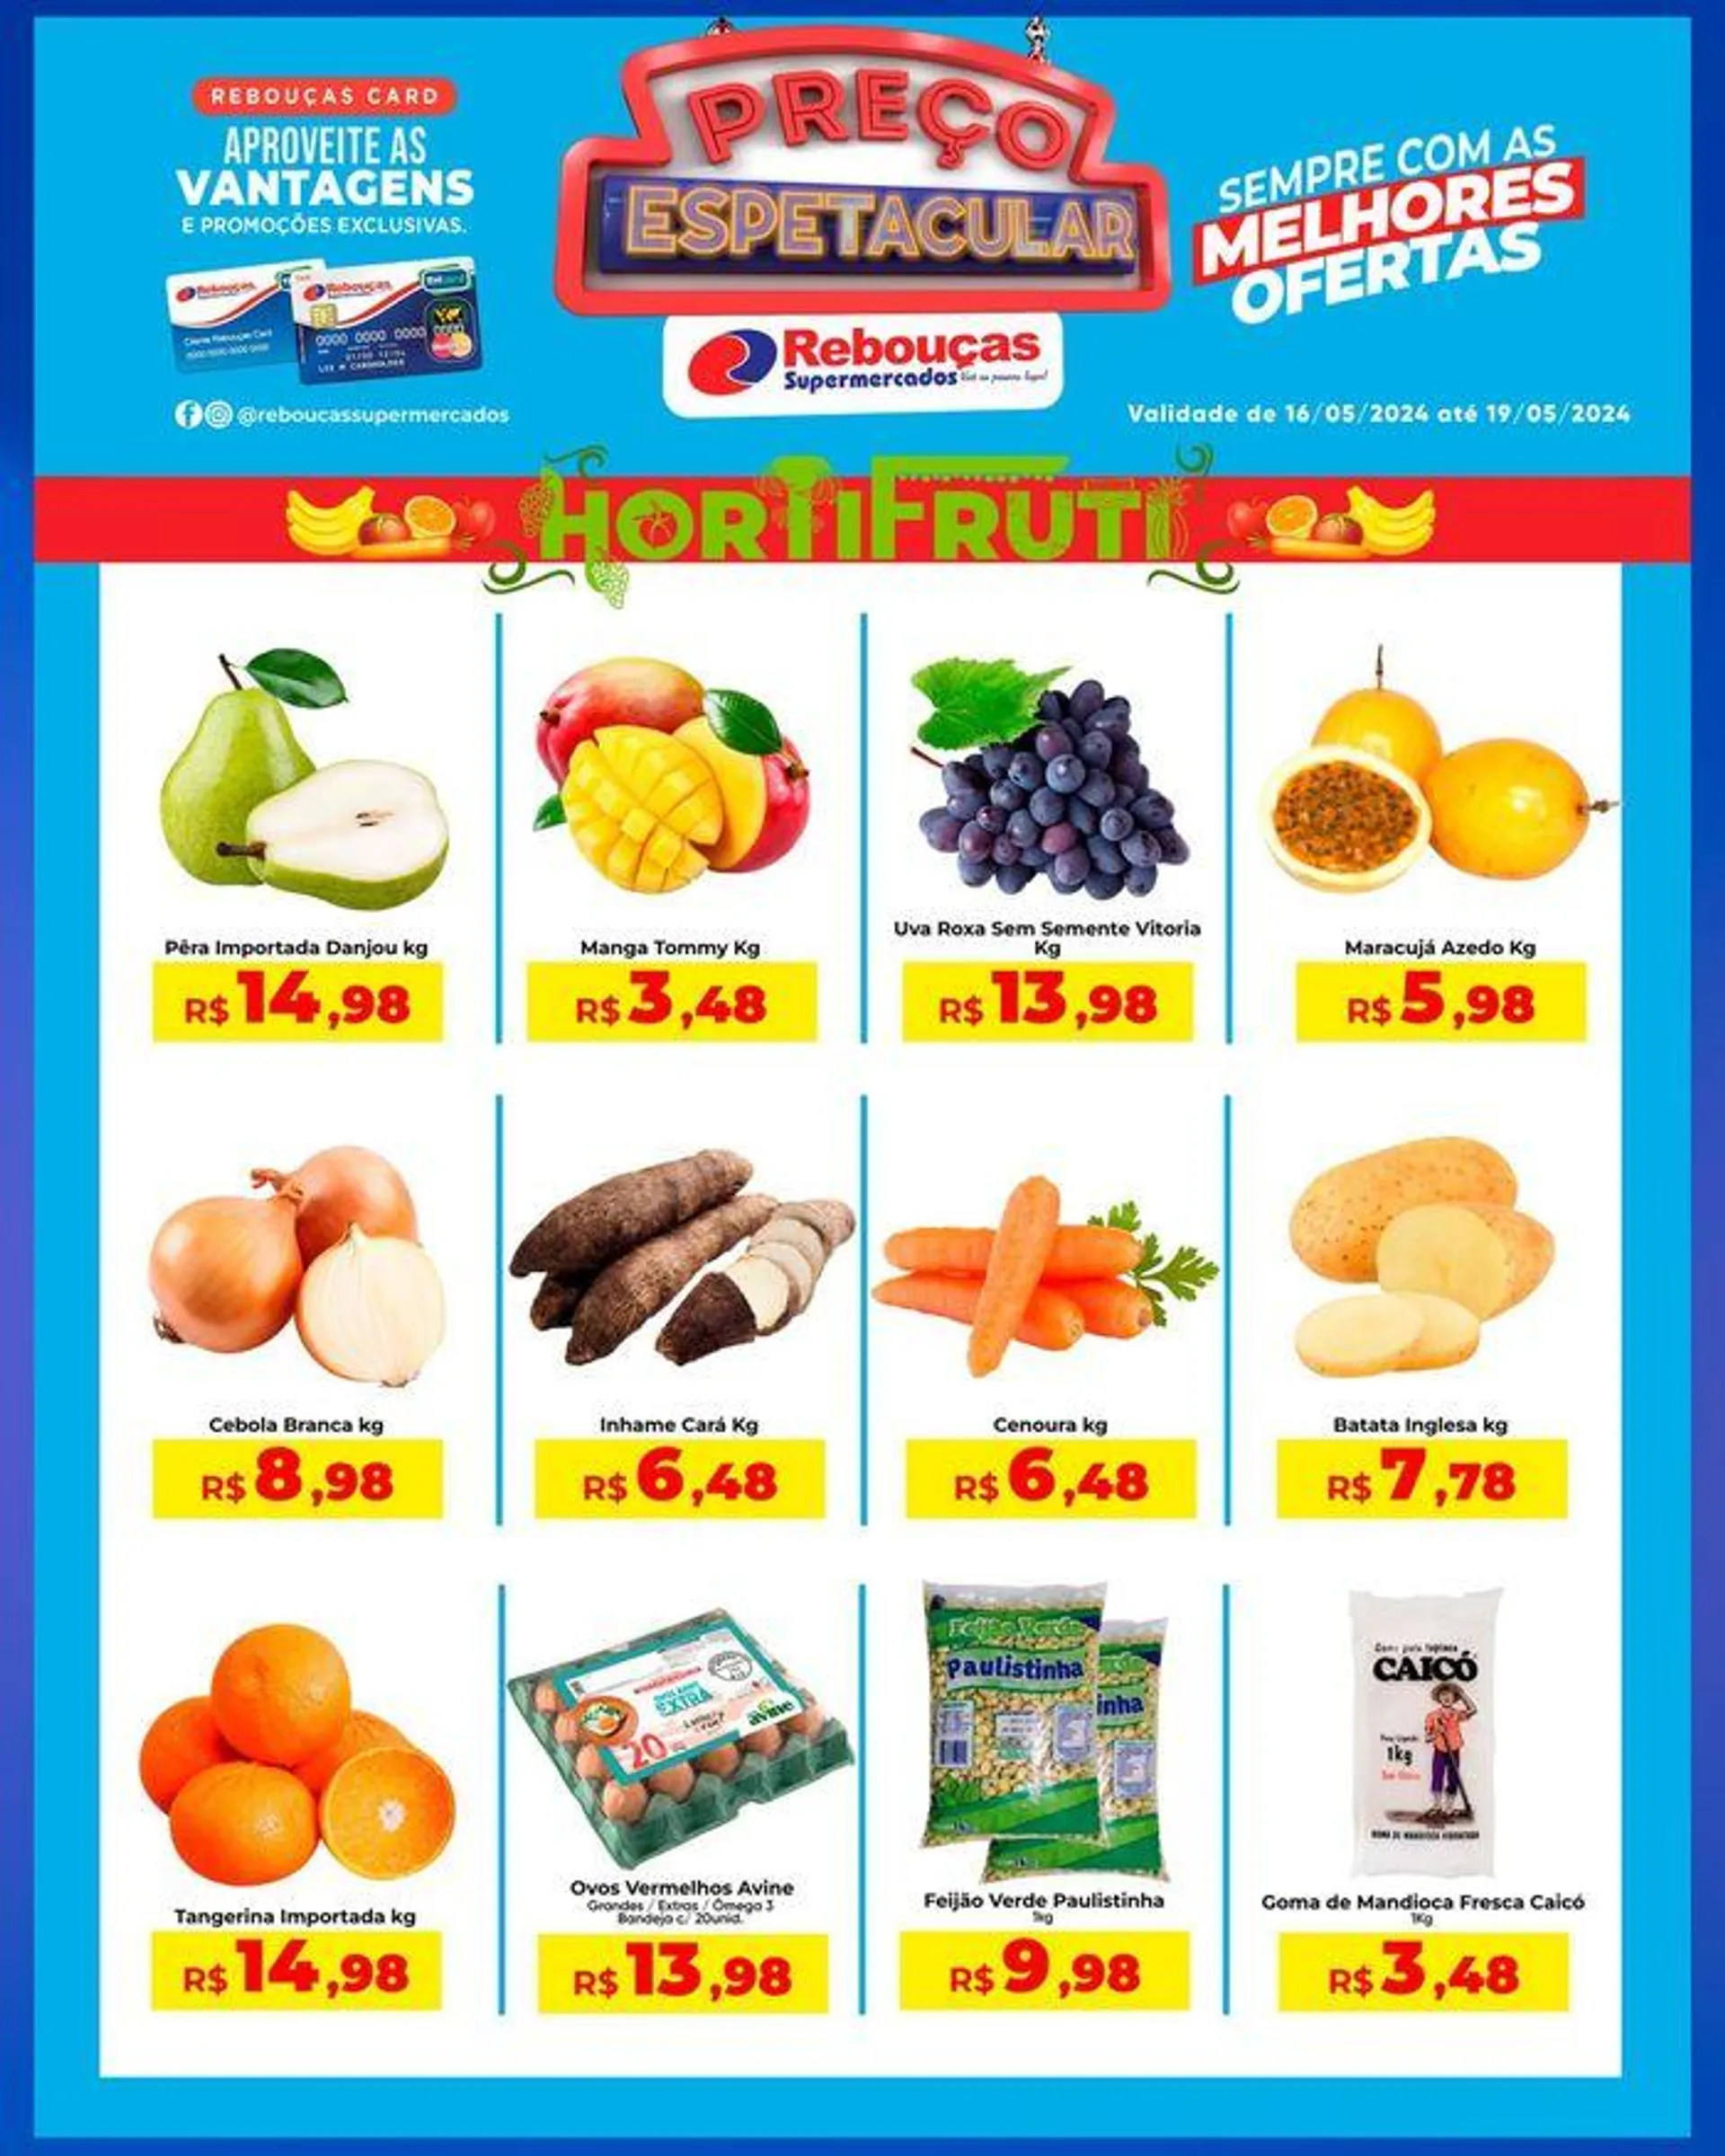 Ofertas Rebouças Supermercados - 1